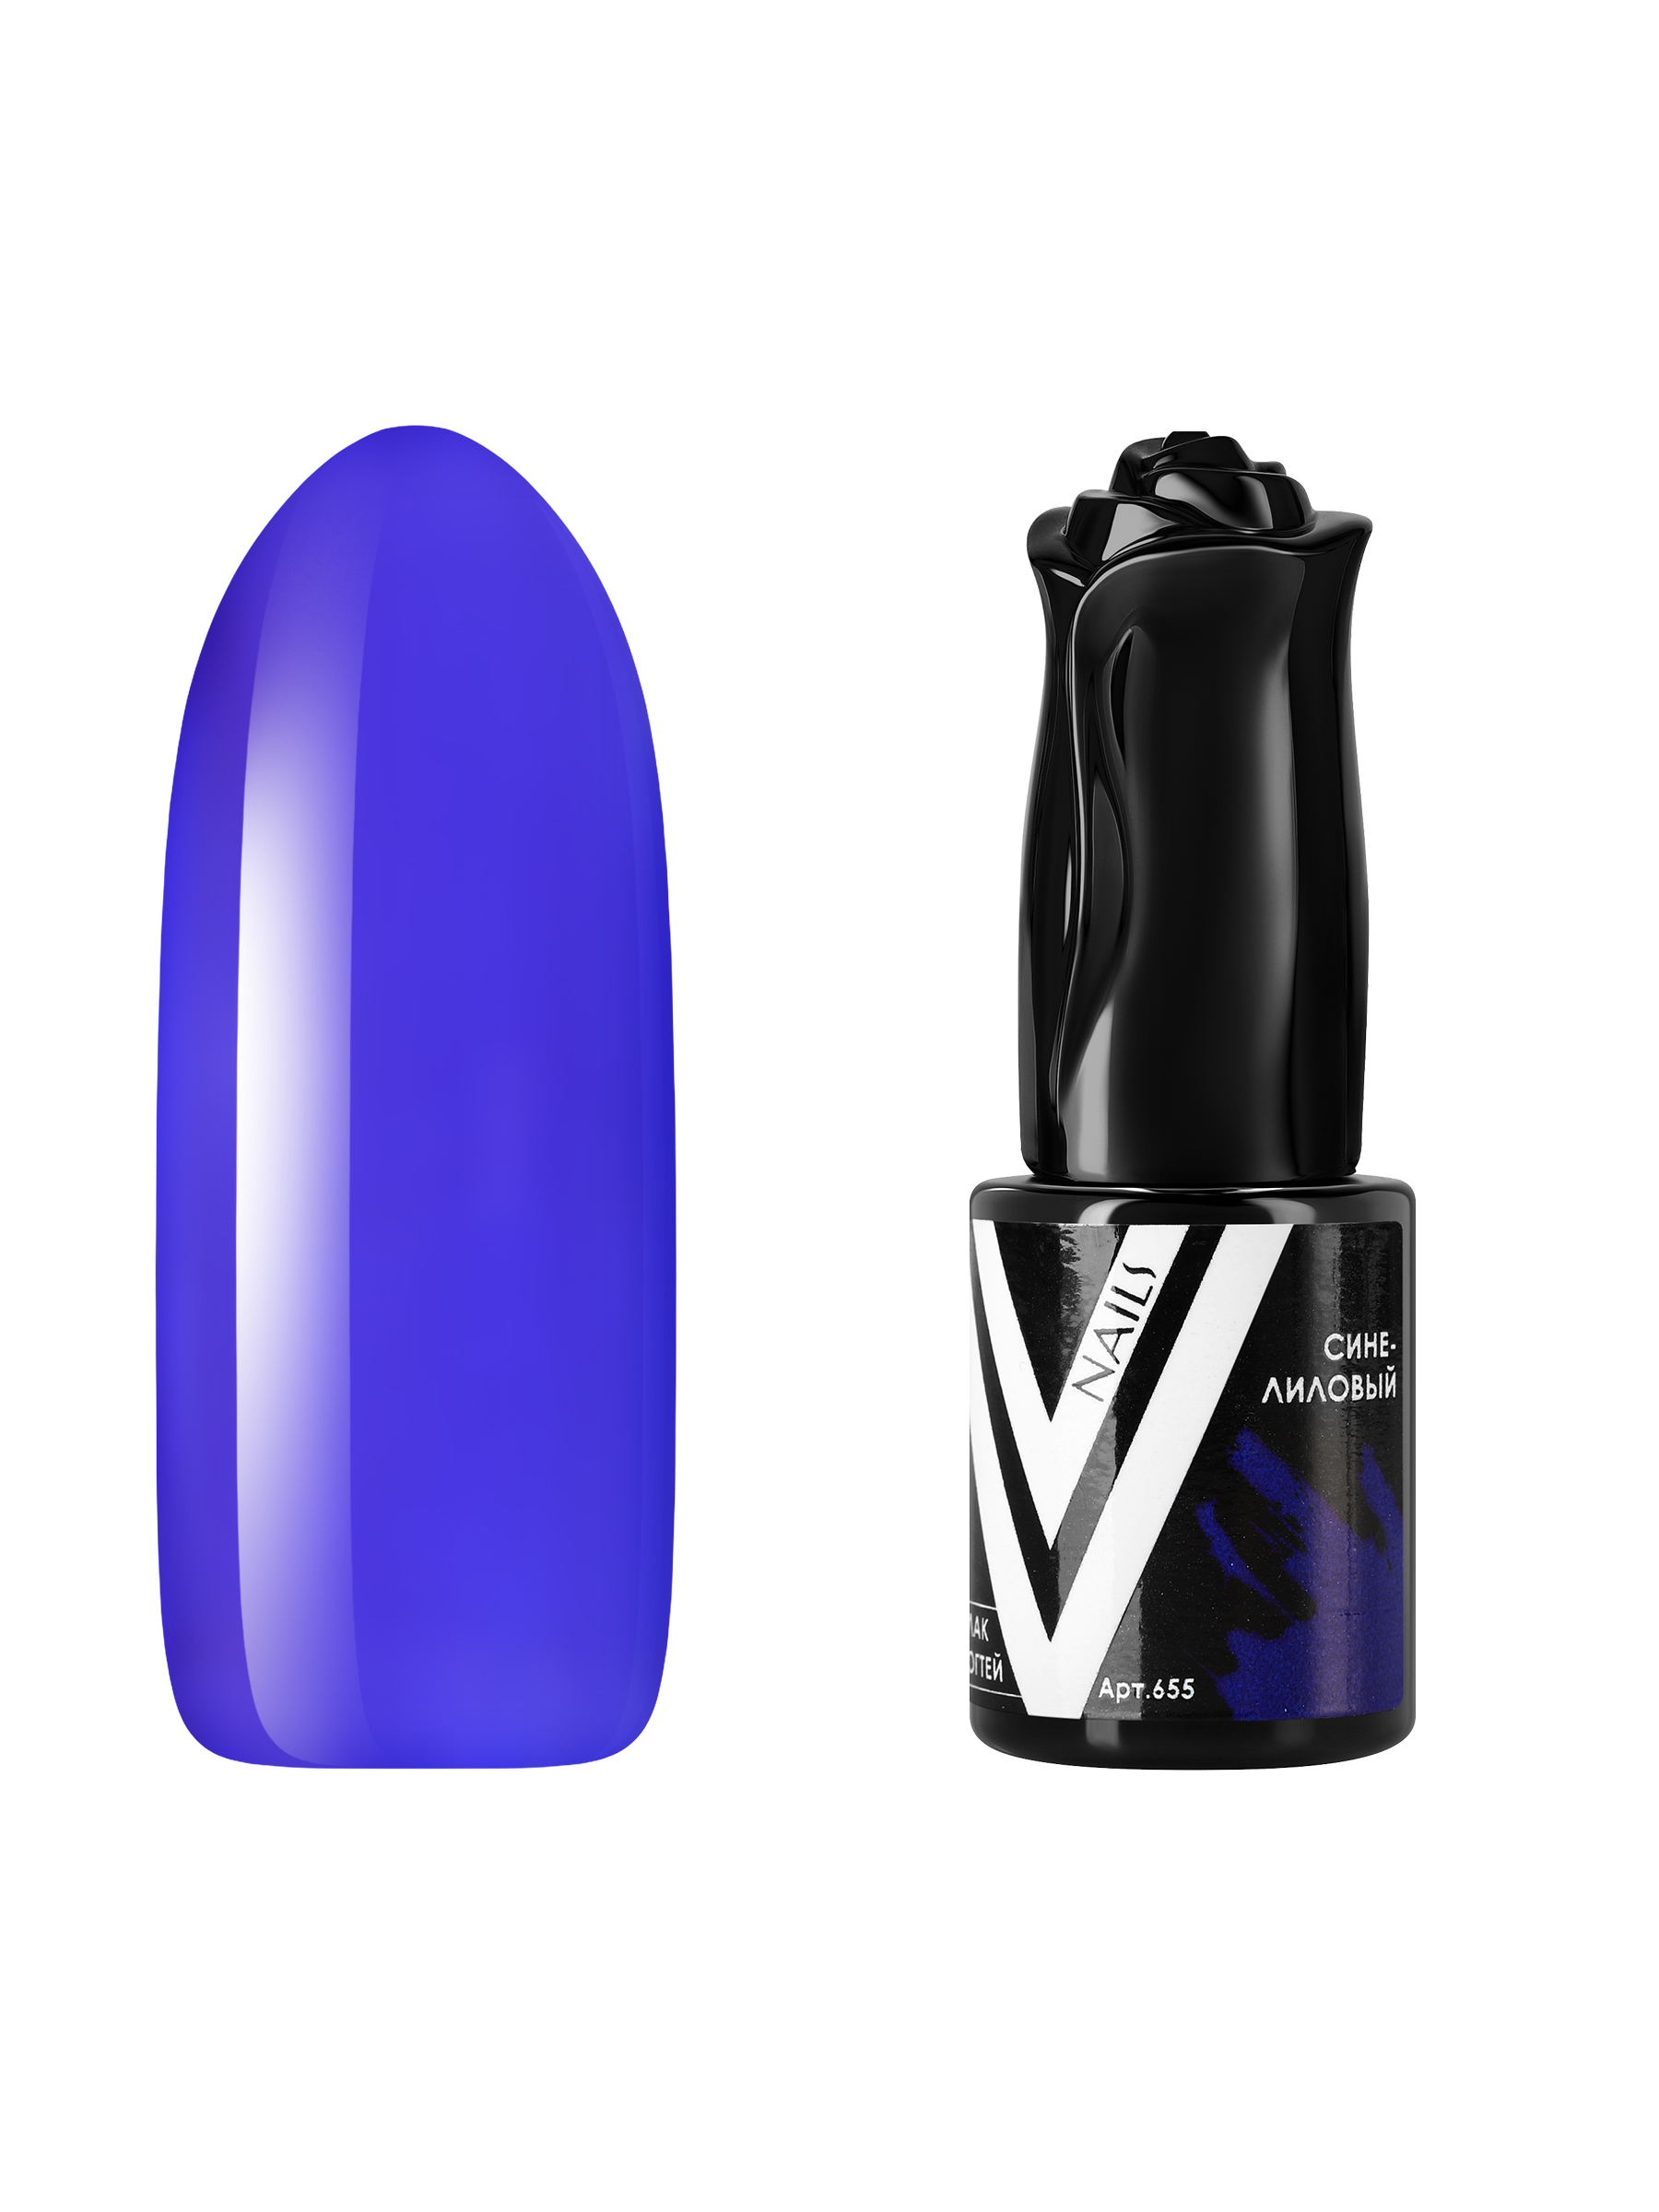 Гель-лак витражный Vogue Nails для аквариумного дизайна прозрачный фиолетовый синий, 10 мл железная дорога с новым годом радиоуправление эффект дыма